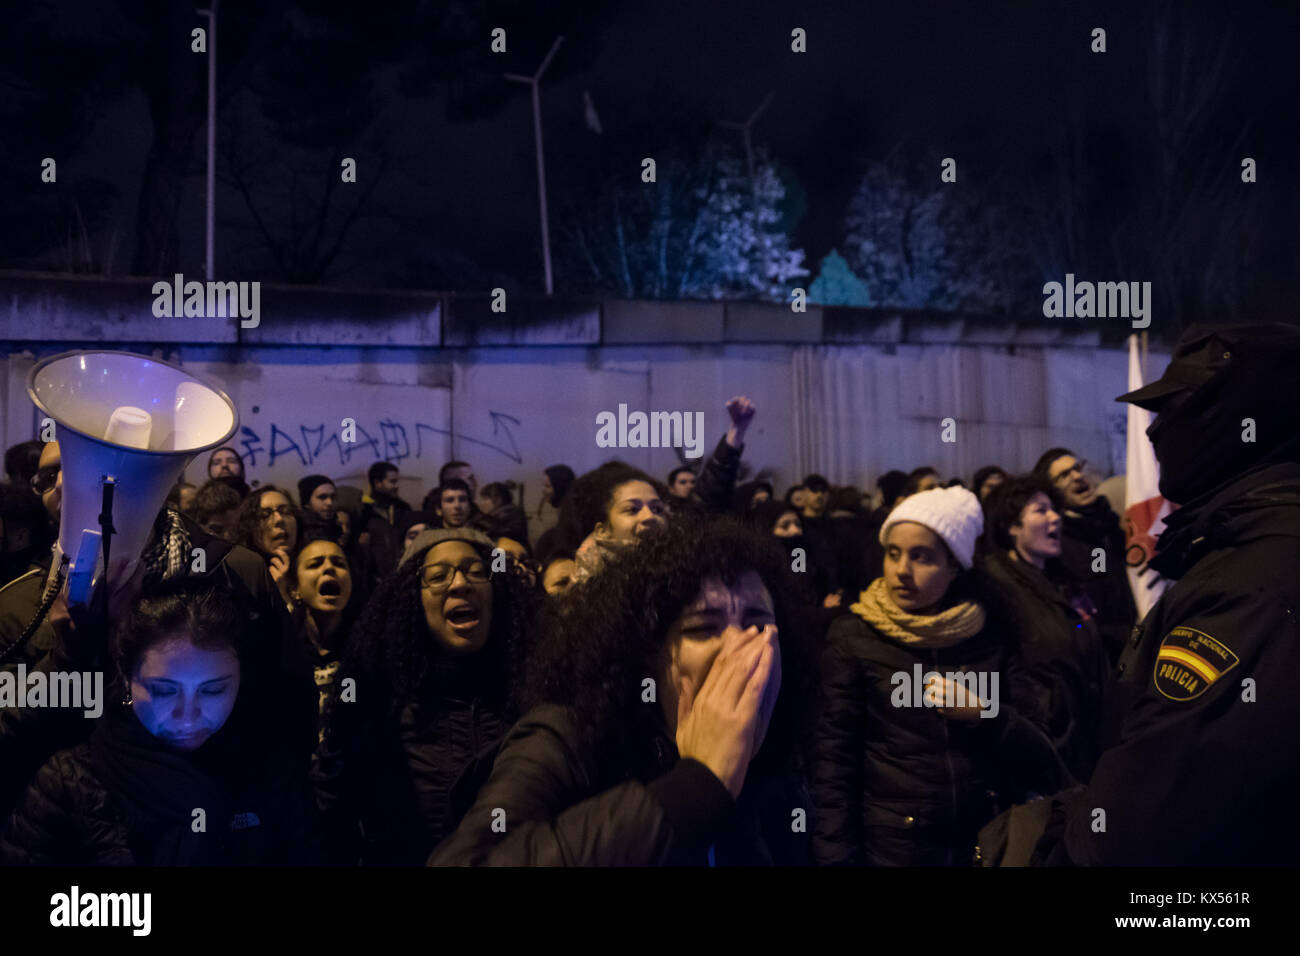 Madrid, Spanien. 7 Jan, 2018. Menschen protestieren vor ALUCHE CIE (Migranten Detention Center) die Schließung der Haftanstalten nach dem letzten Toten Migrant in Archidona, Malaga zu verlangen. Credit: Marcos del Mazo/Alamy leben Nachrichten Stockfoto